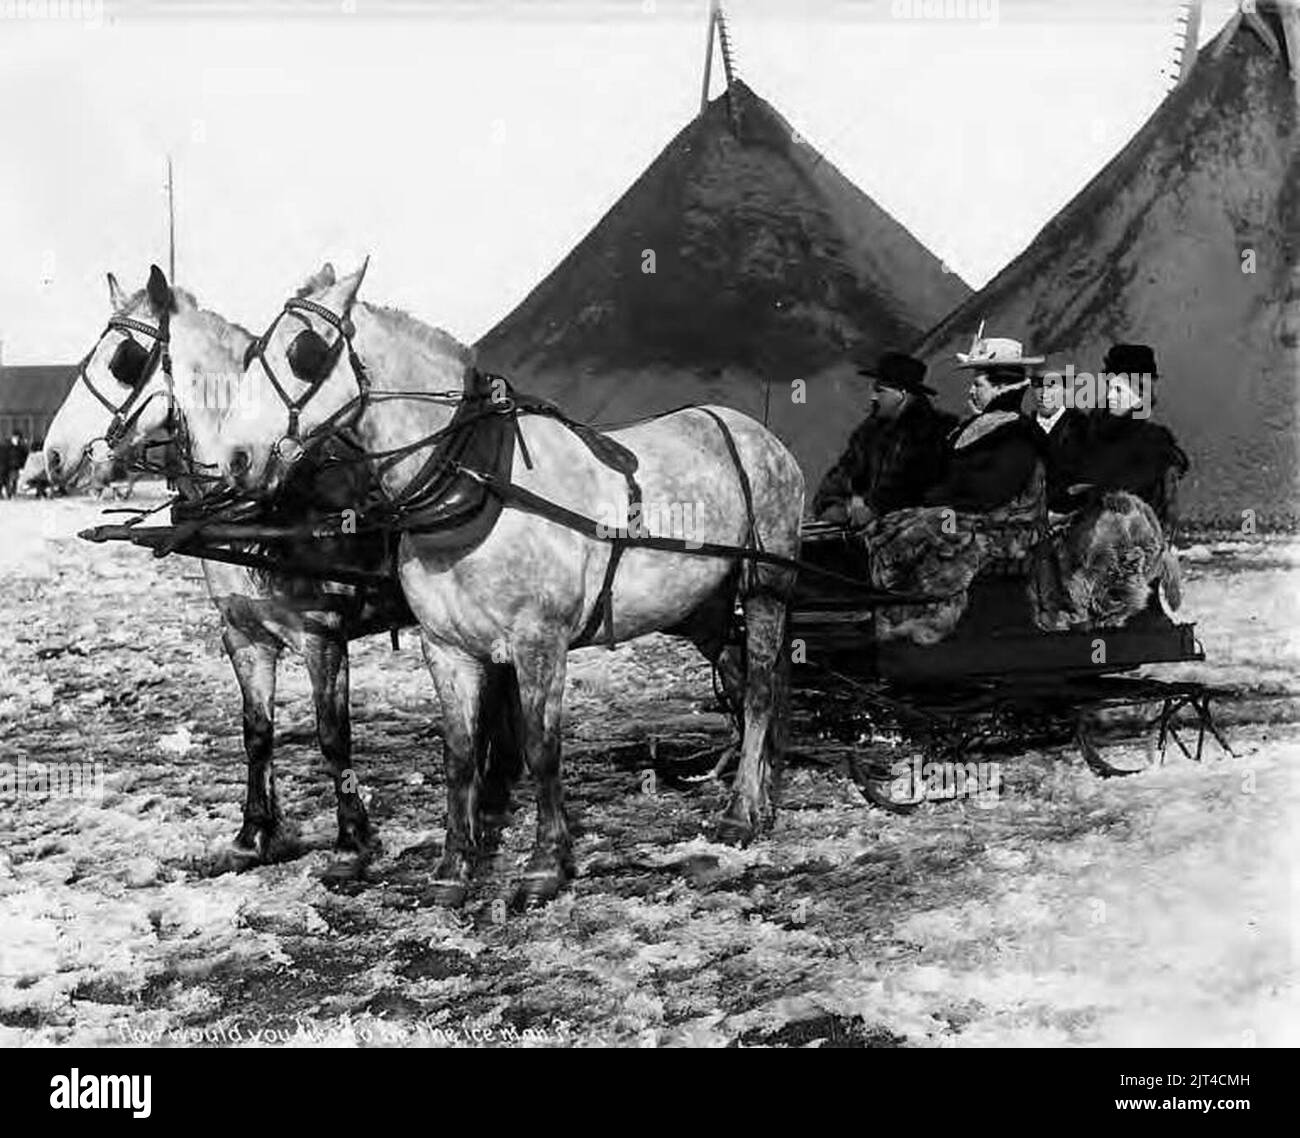 Zwei Paare im Pferdeschlitten vor Bergbauhalden bei einem Bergbaubetrieb in Nome, Alaska, um 1905 (AL CA 7500). Stockfoto